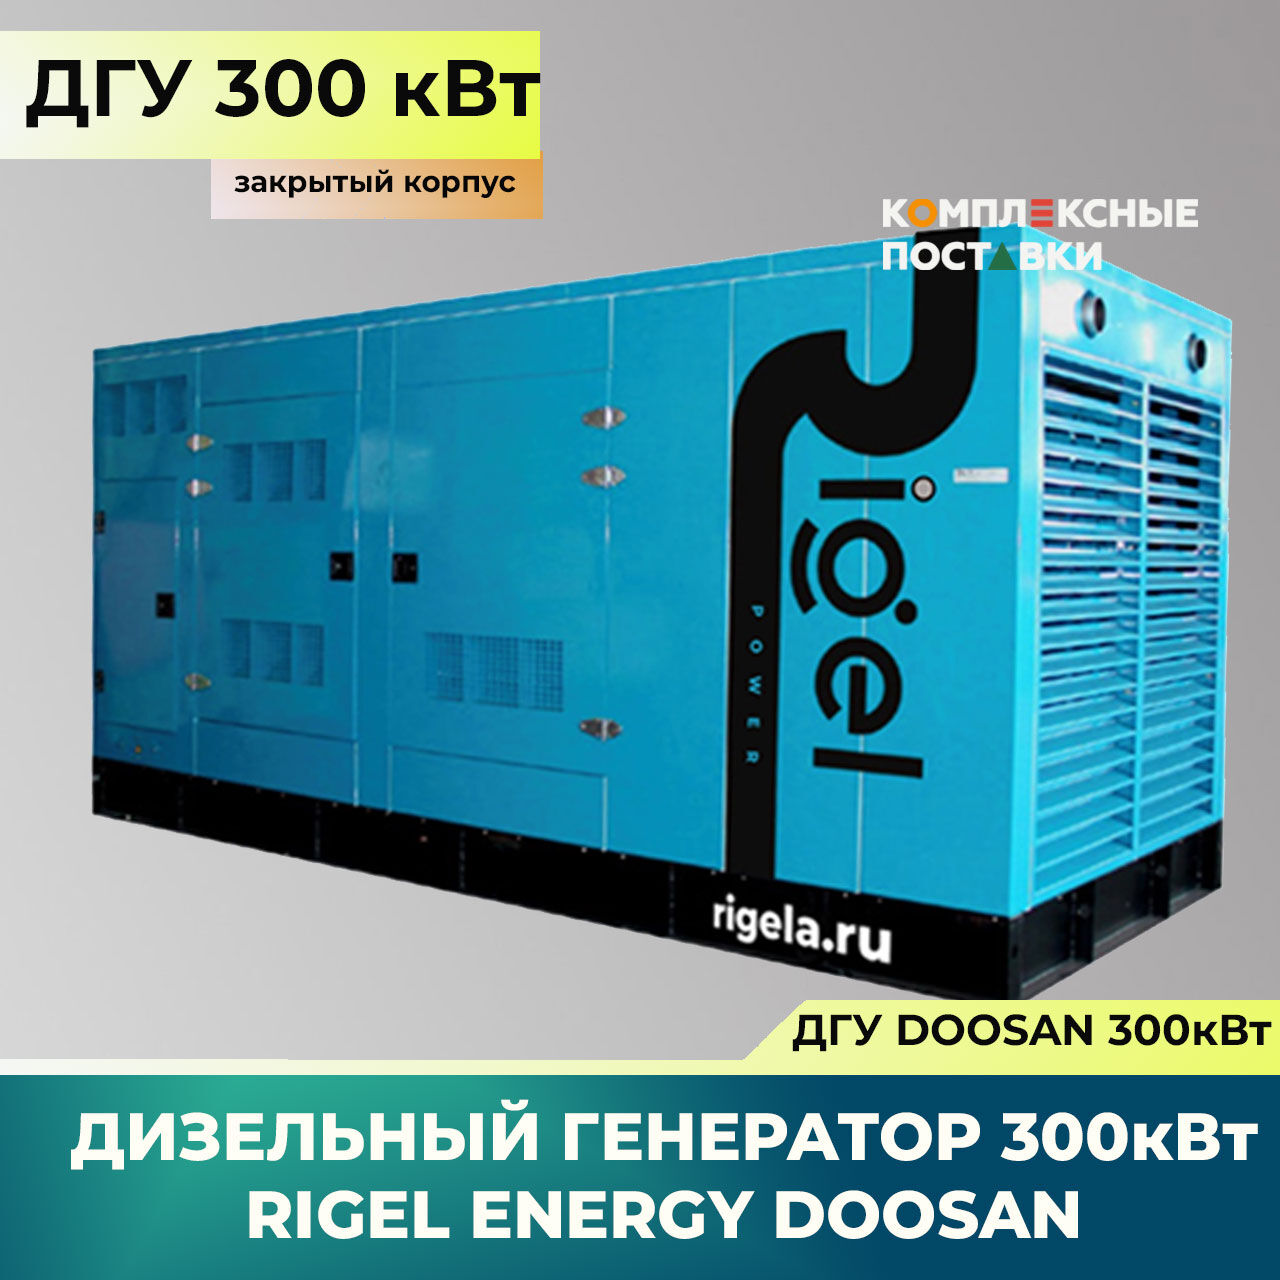 ДГУ 300кВт Doosan Дизель-генератор Rigel Energy Doosan RED 300 (300 кВт, Doosan) закрытый